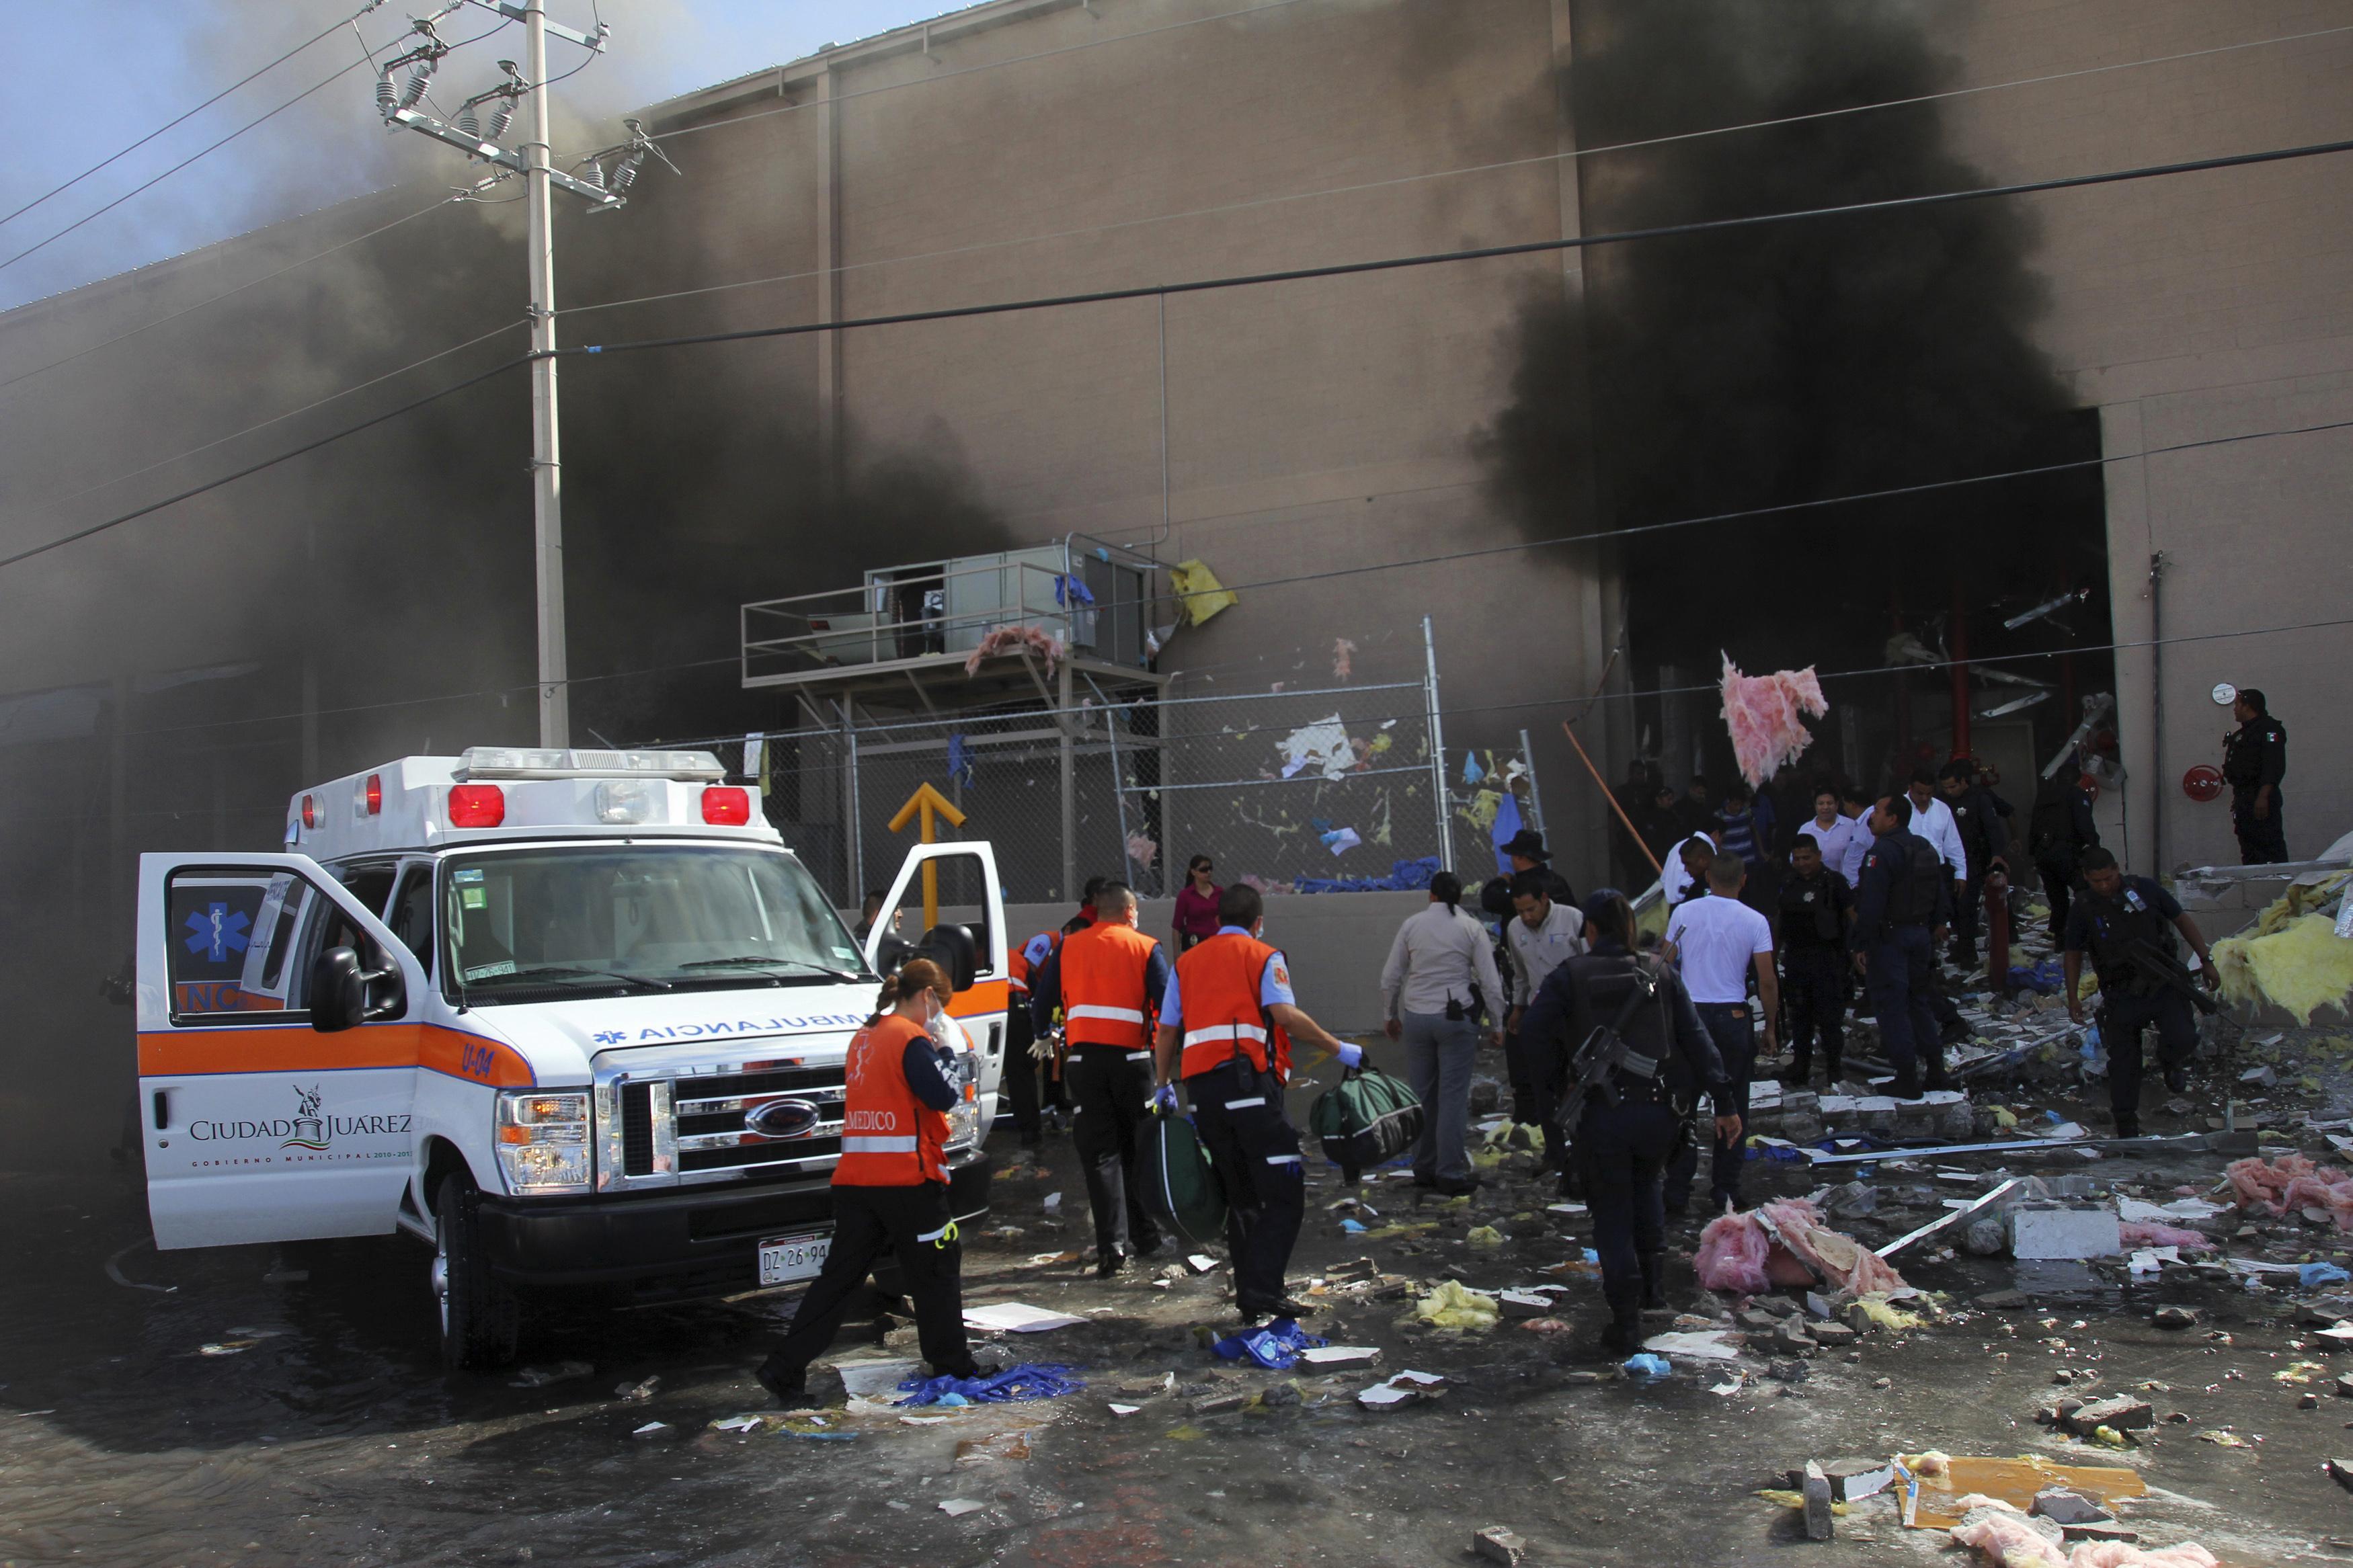 Εικόνες καταστροφής από έκρηξη σε εργοστάσιο καραμέλας στο Μεξικό (ΦΩΤΟ)